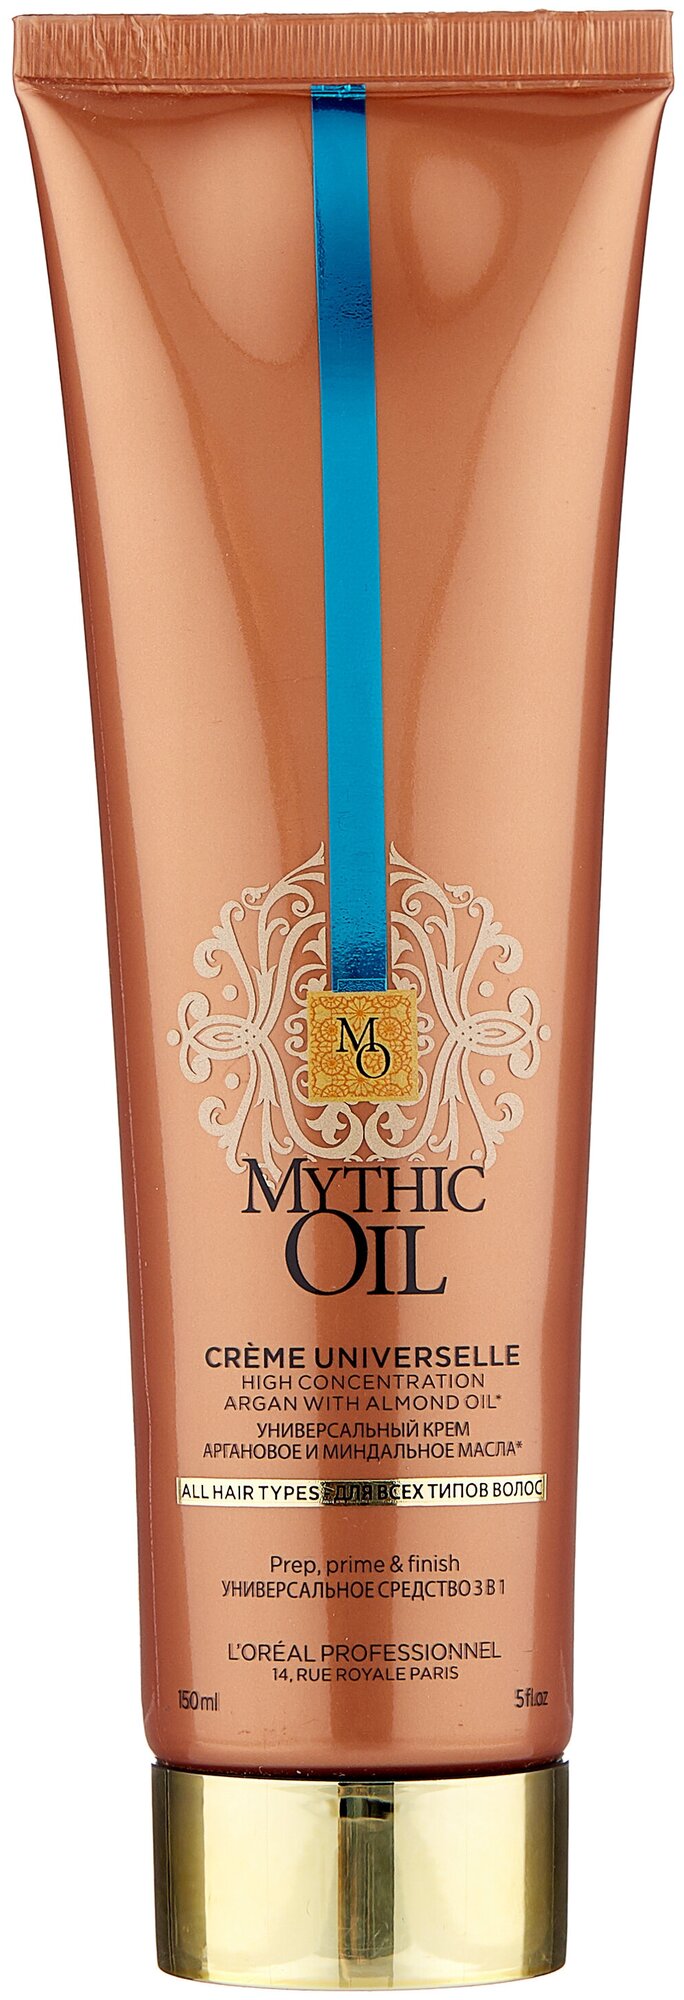 L'Oreal Professionnel Mythic Oil универсальный крем 3 в 1 для всех типов волос